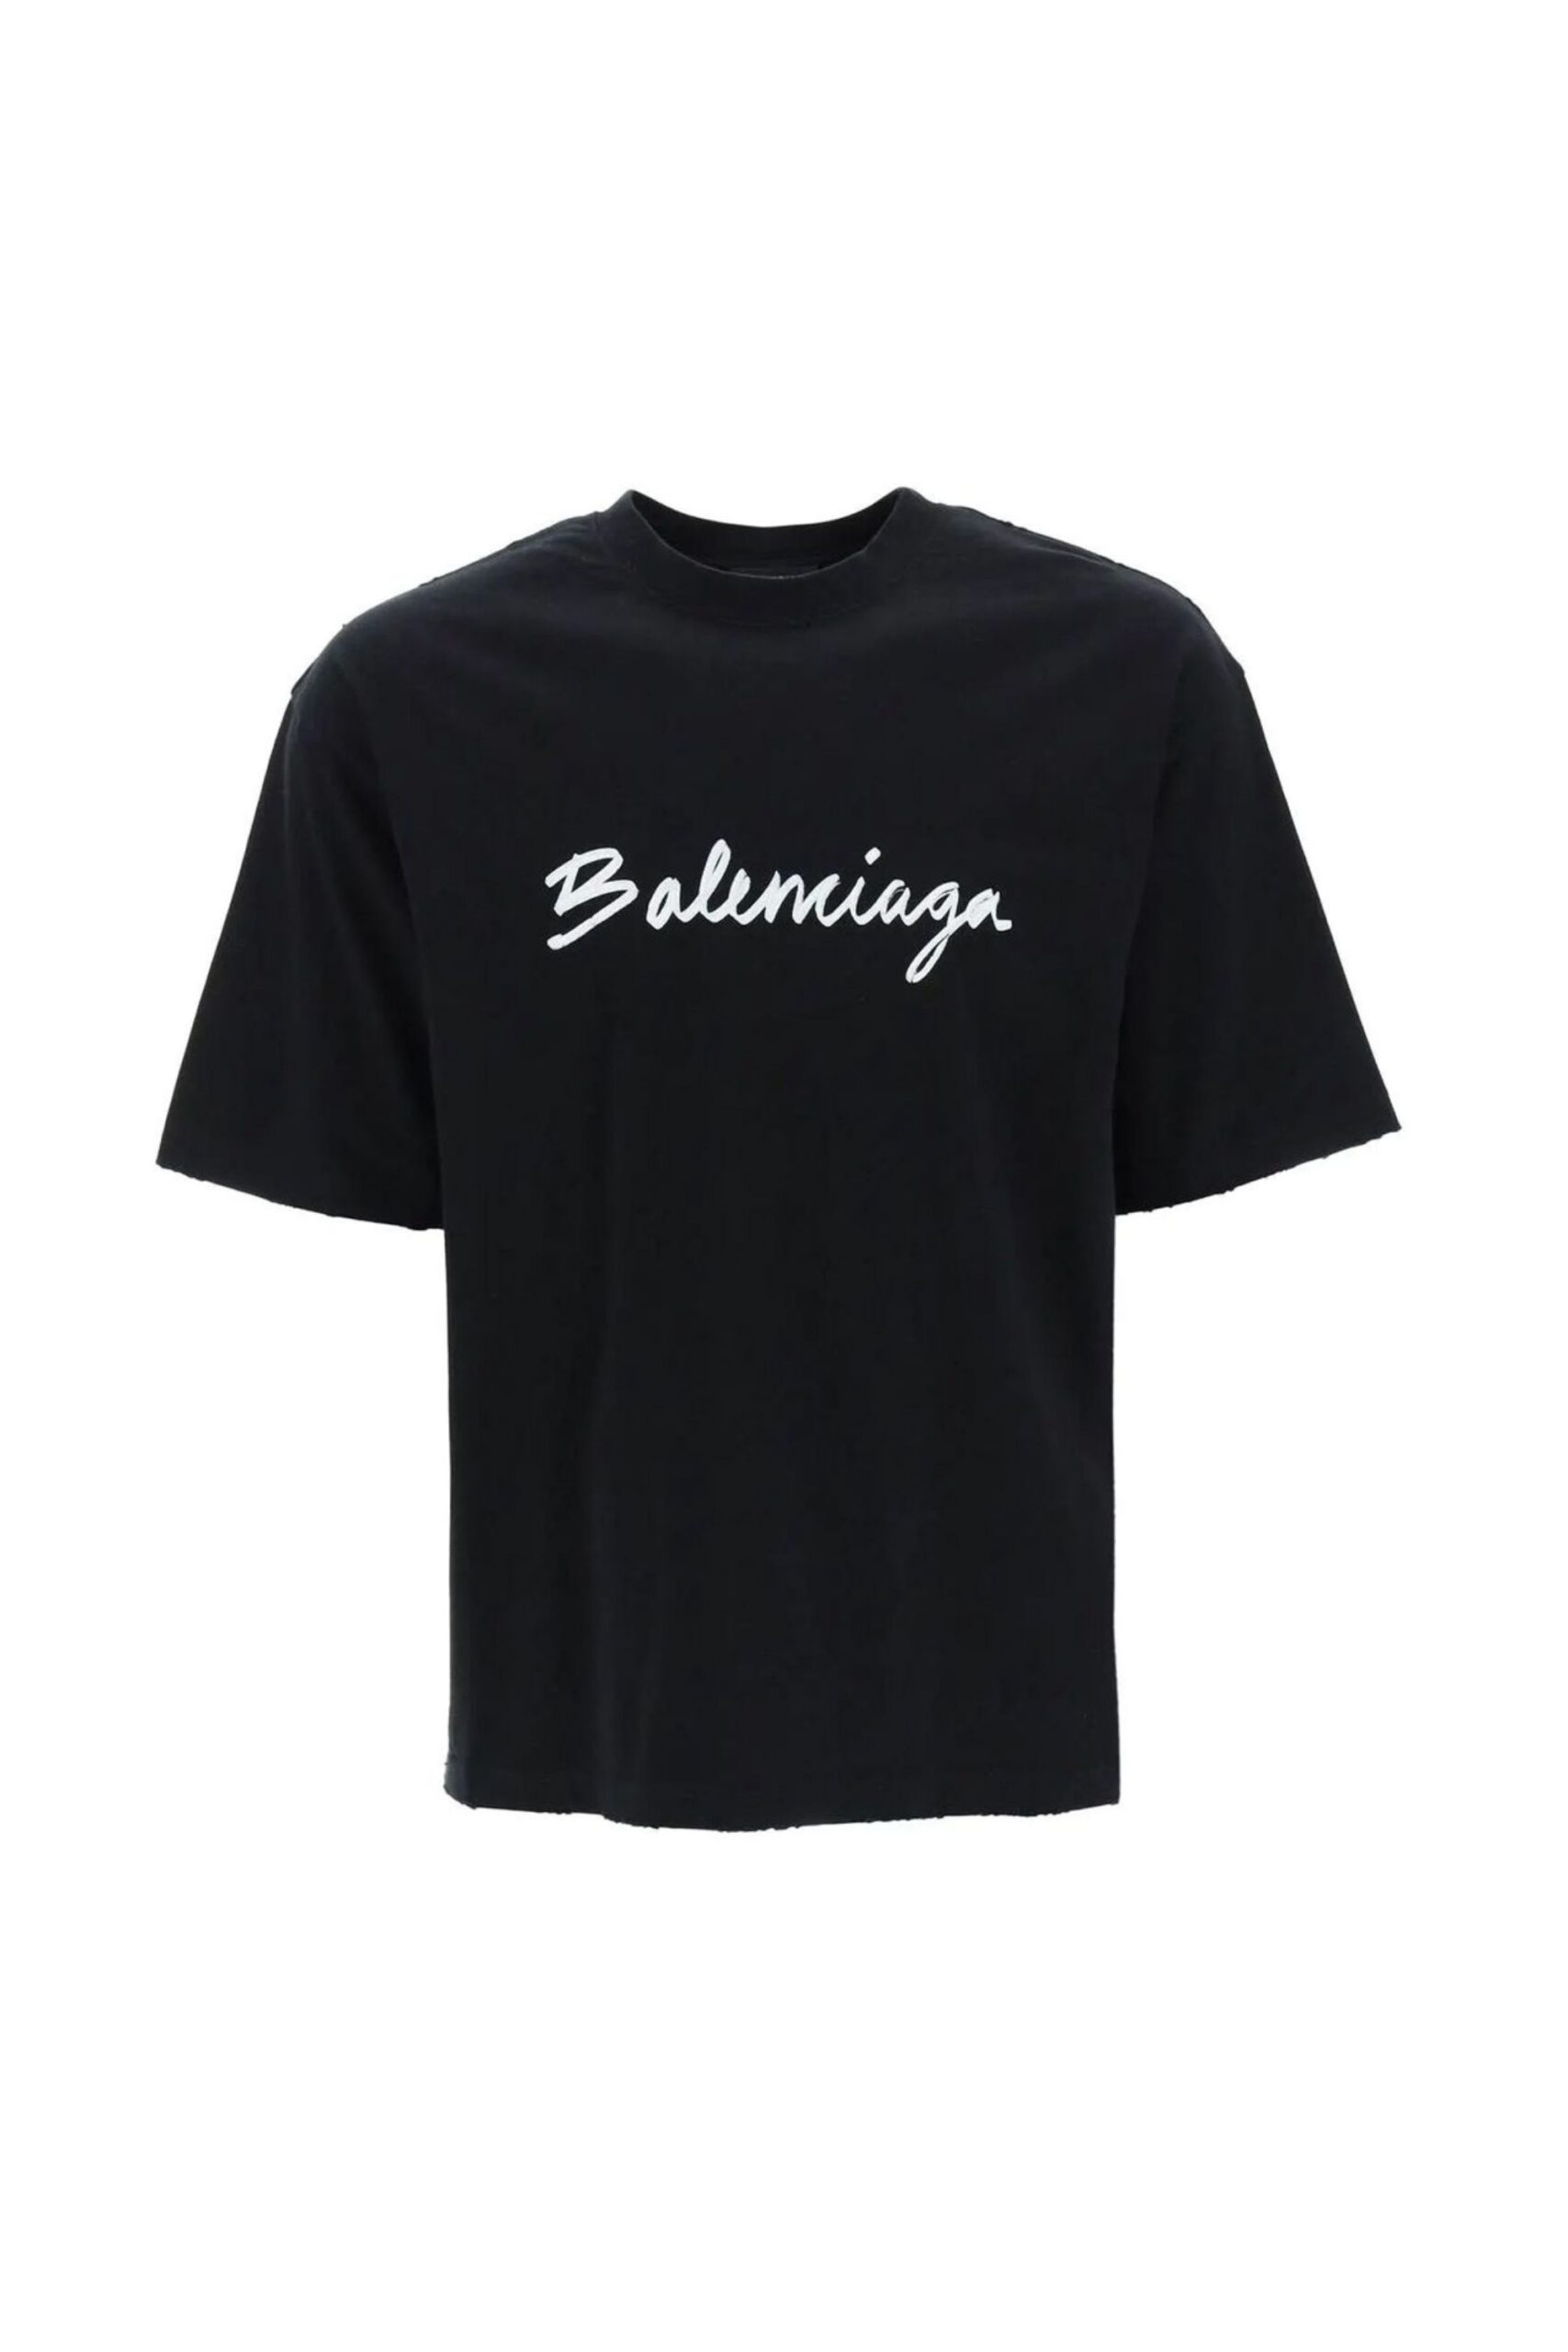 Balenciaga T Shirt Con Stampa Signature vista frontale